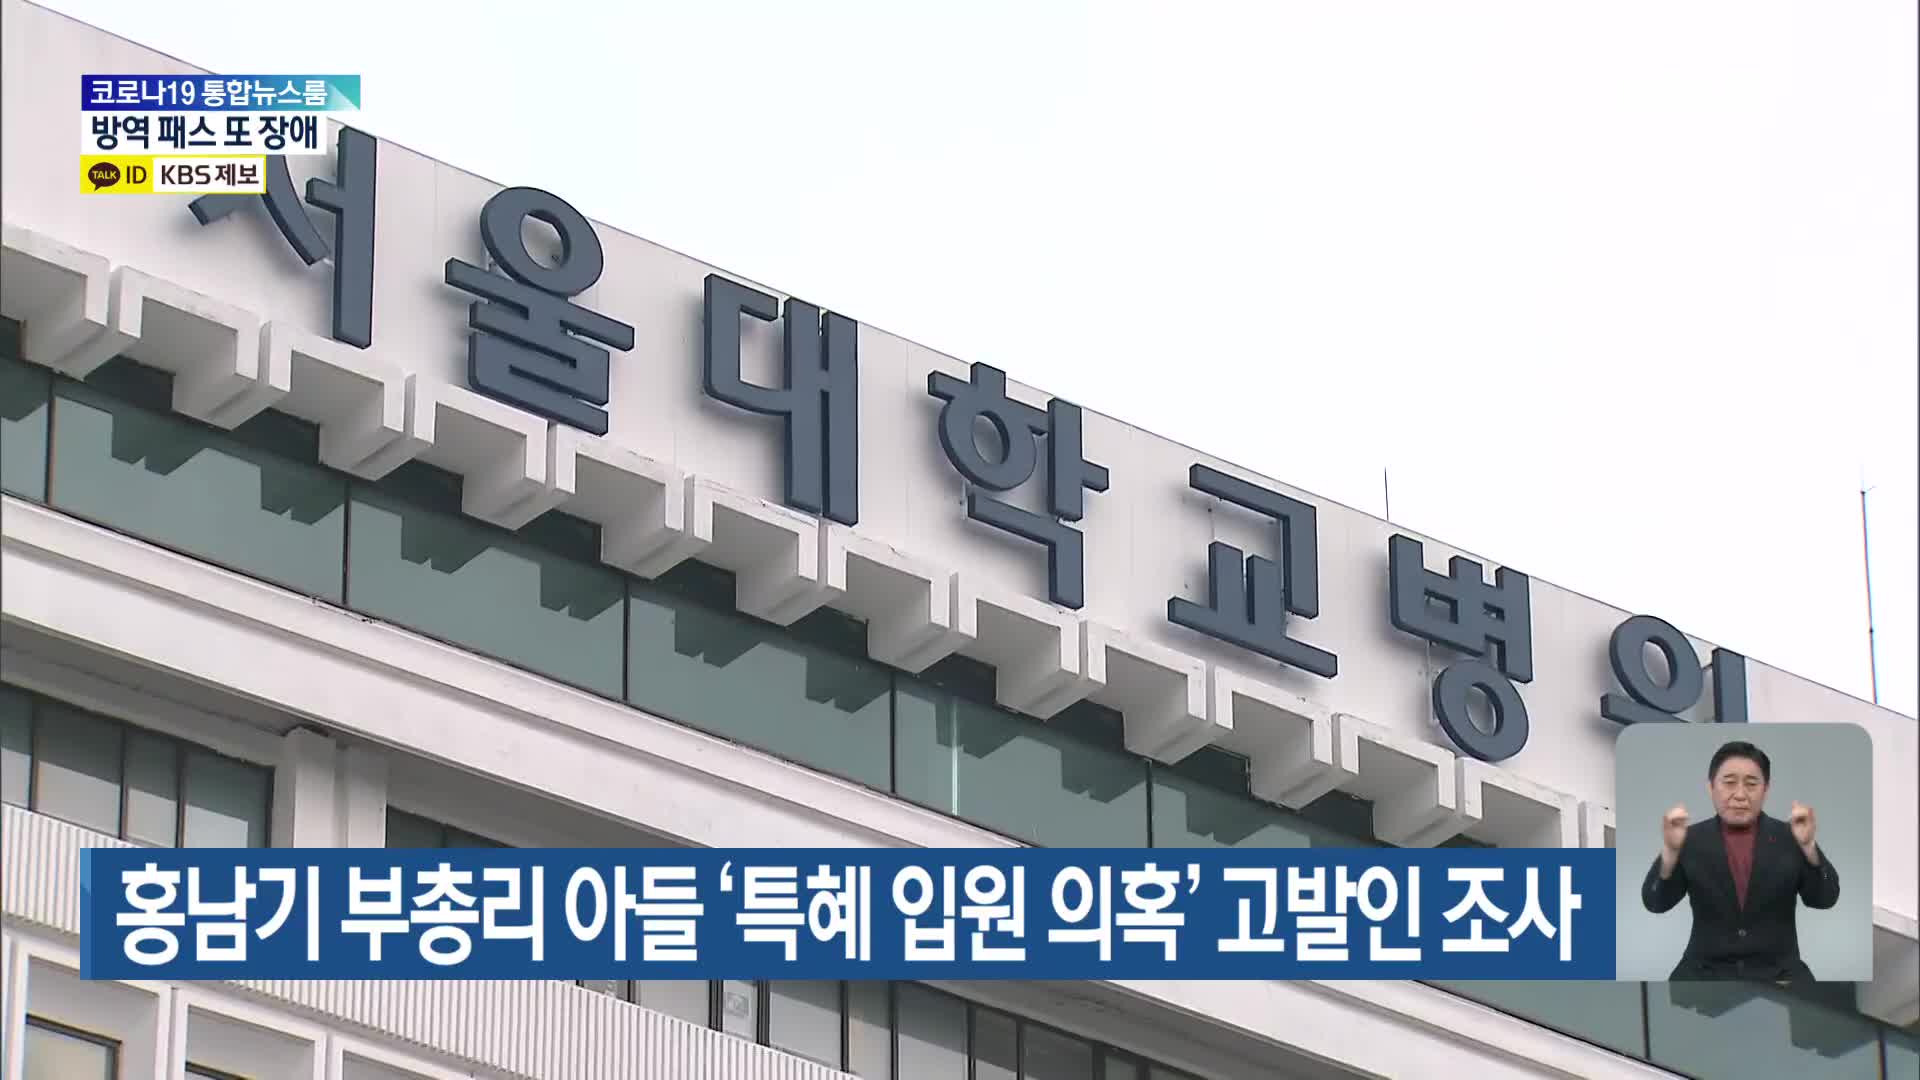 홍남기 부총리 아들 ‘특혜 입원 의혹’ 고발인 조사